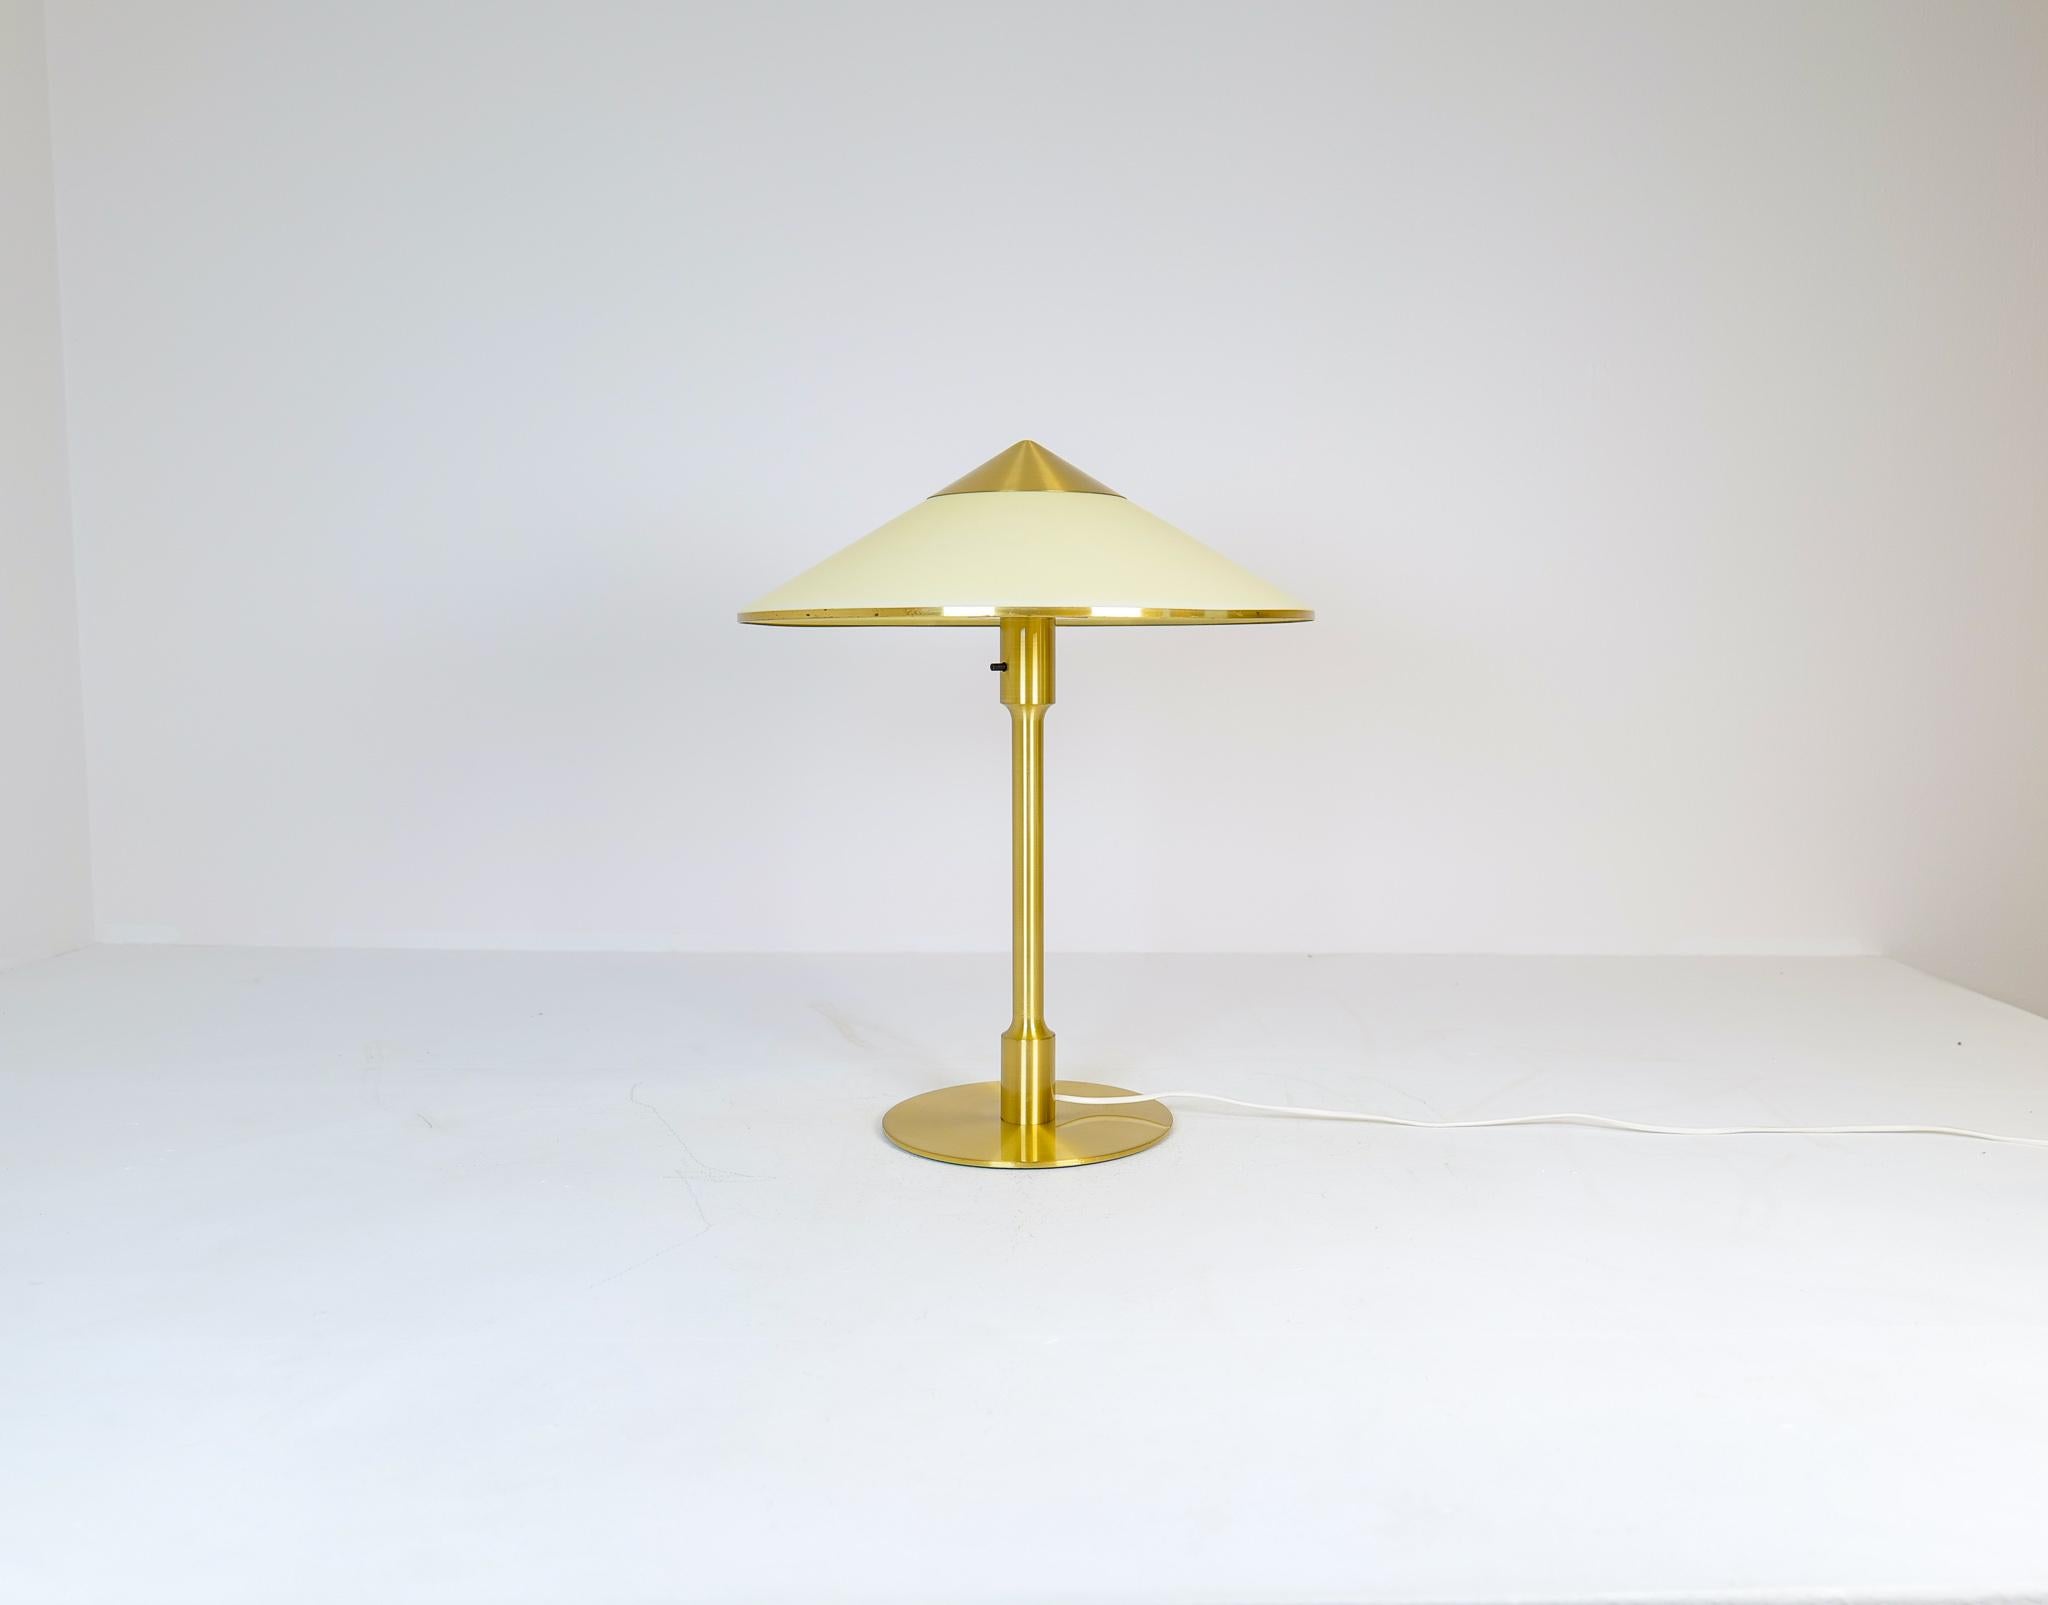 Cette superbe lampe de table a été produite au Danemark dans les années 1950 par Fog & Mørup. Cette lampe emblématique appelée 